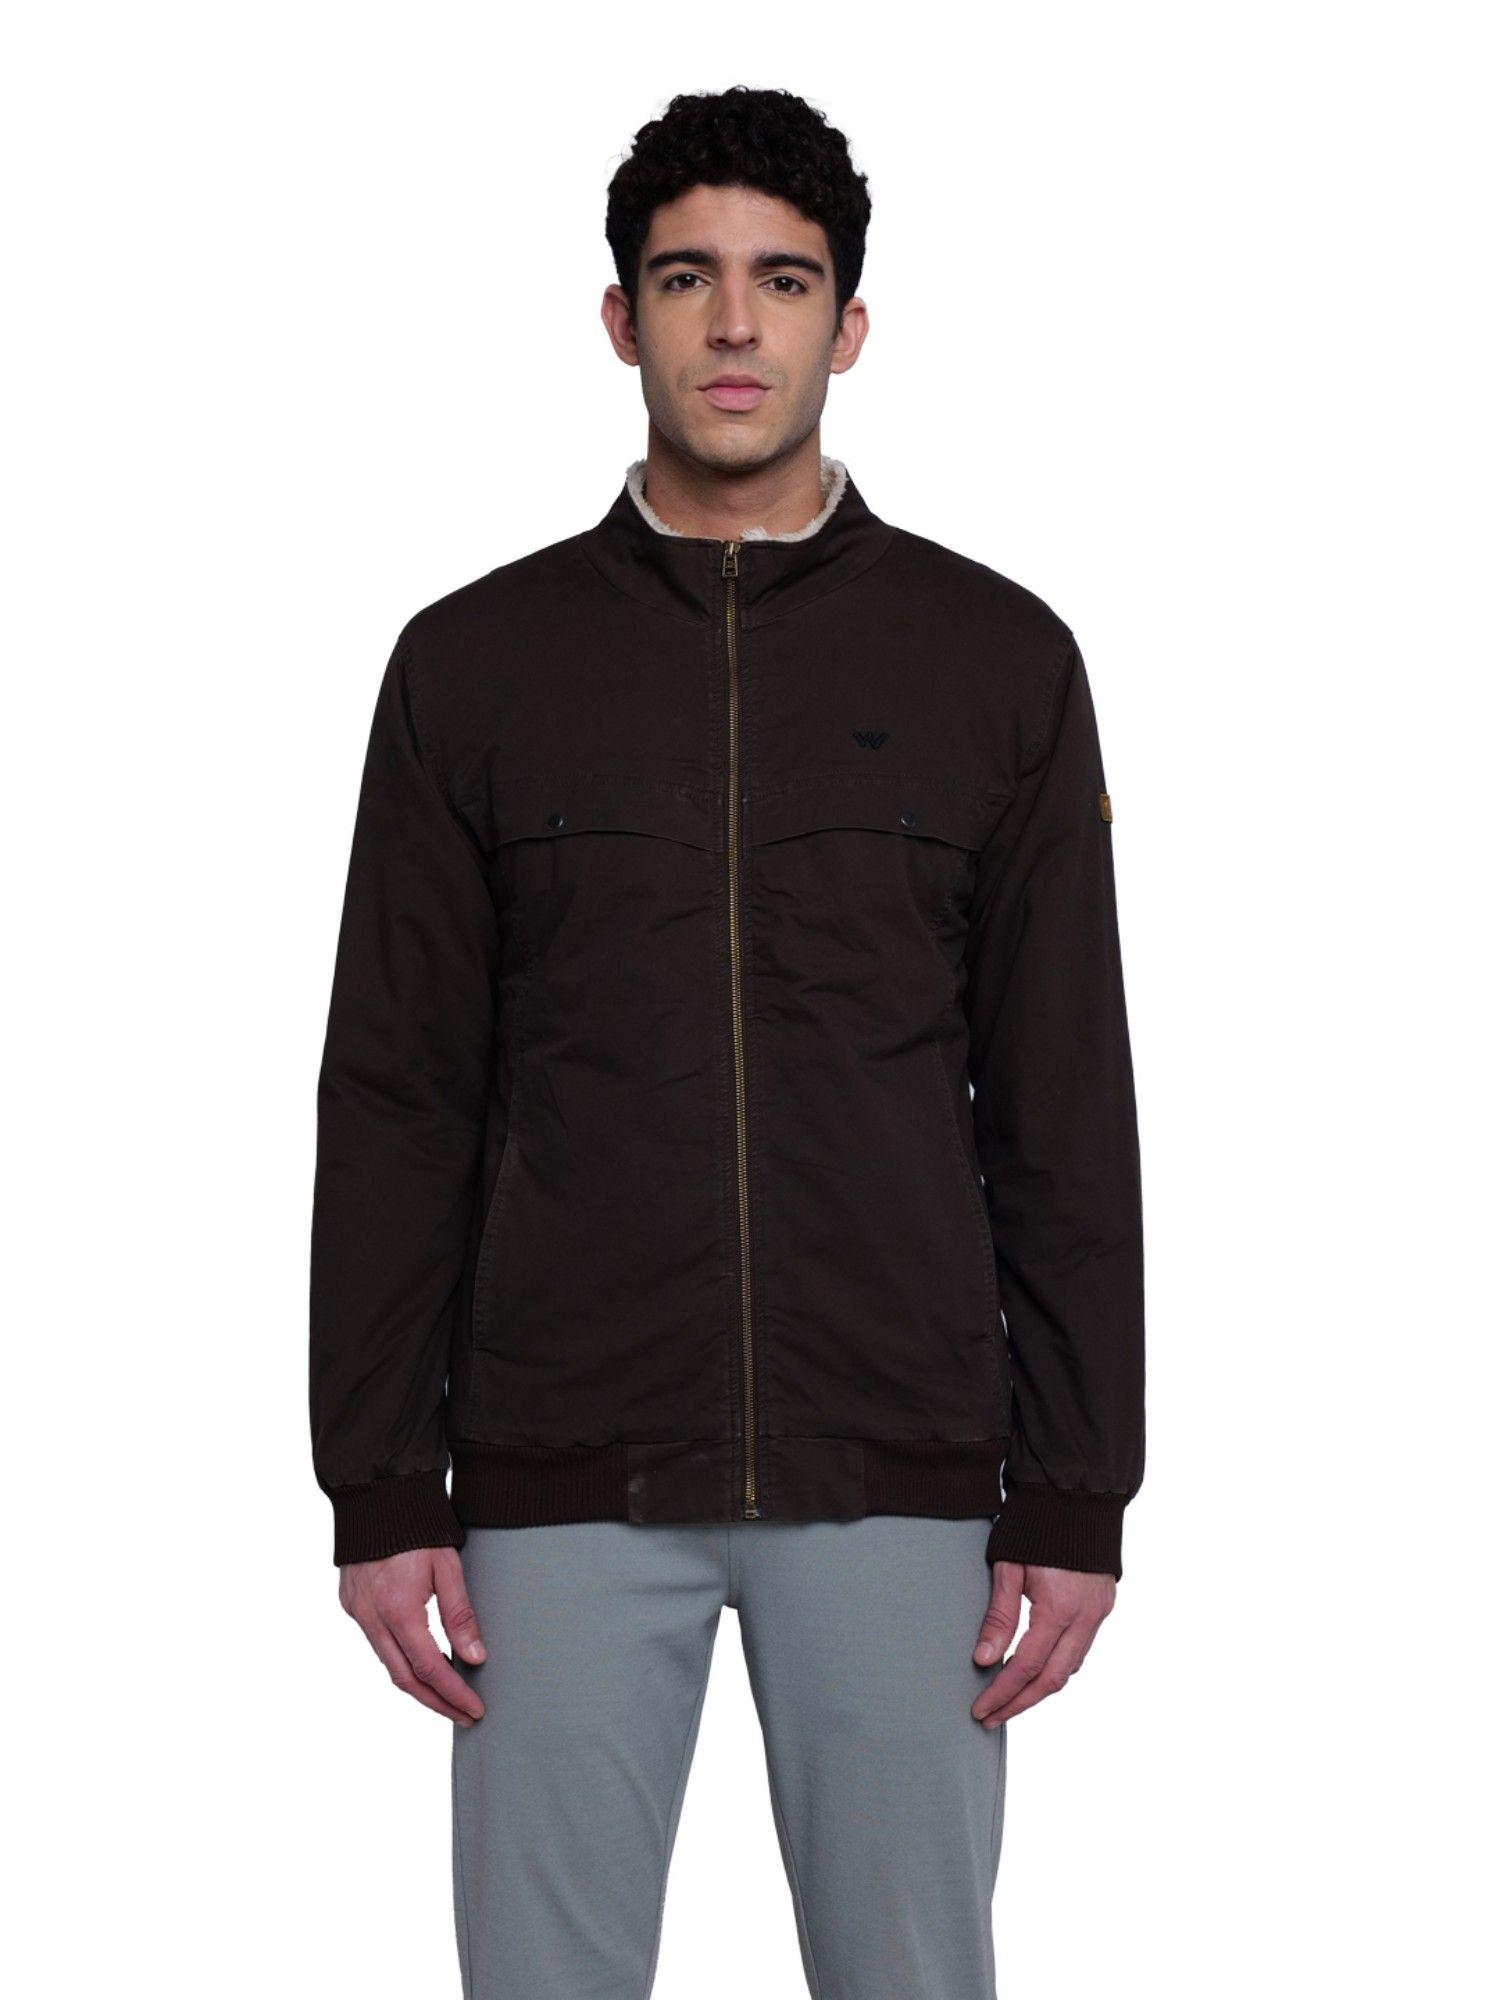 men-cotton-solid-plain-dark-brown-jacket